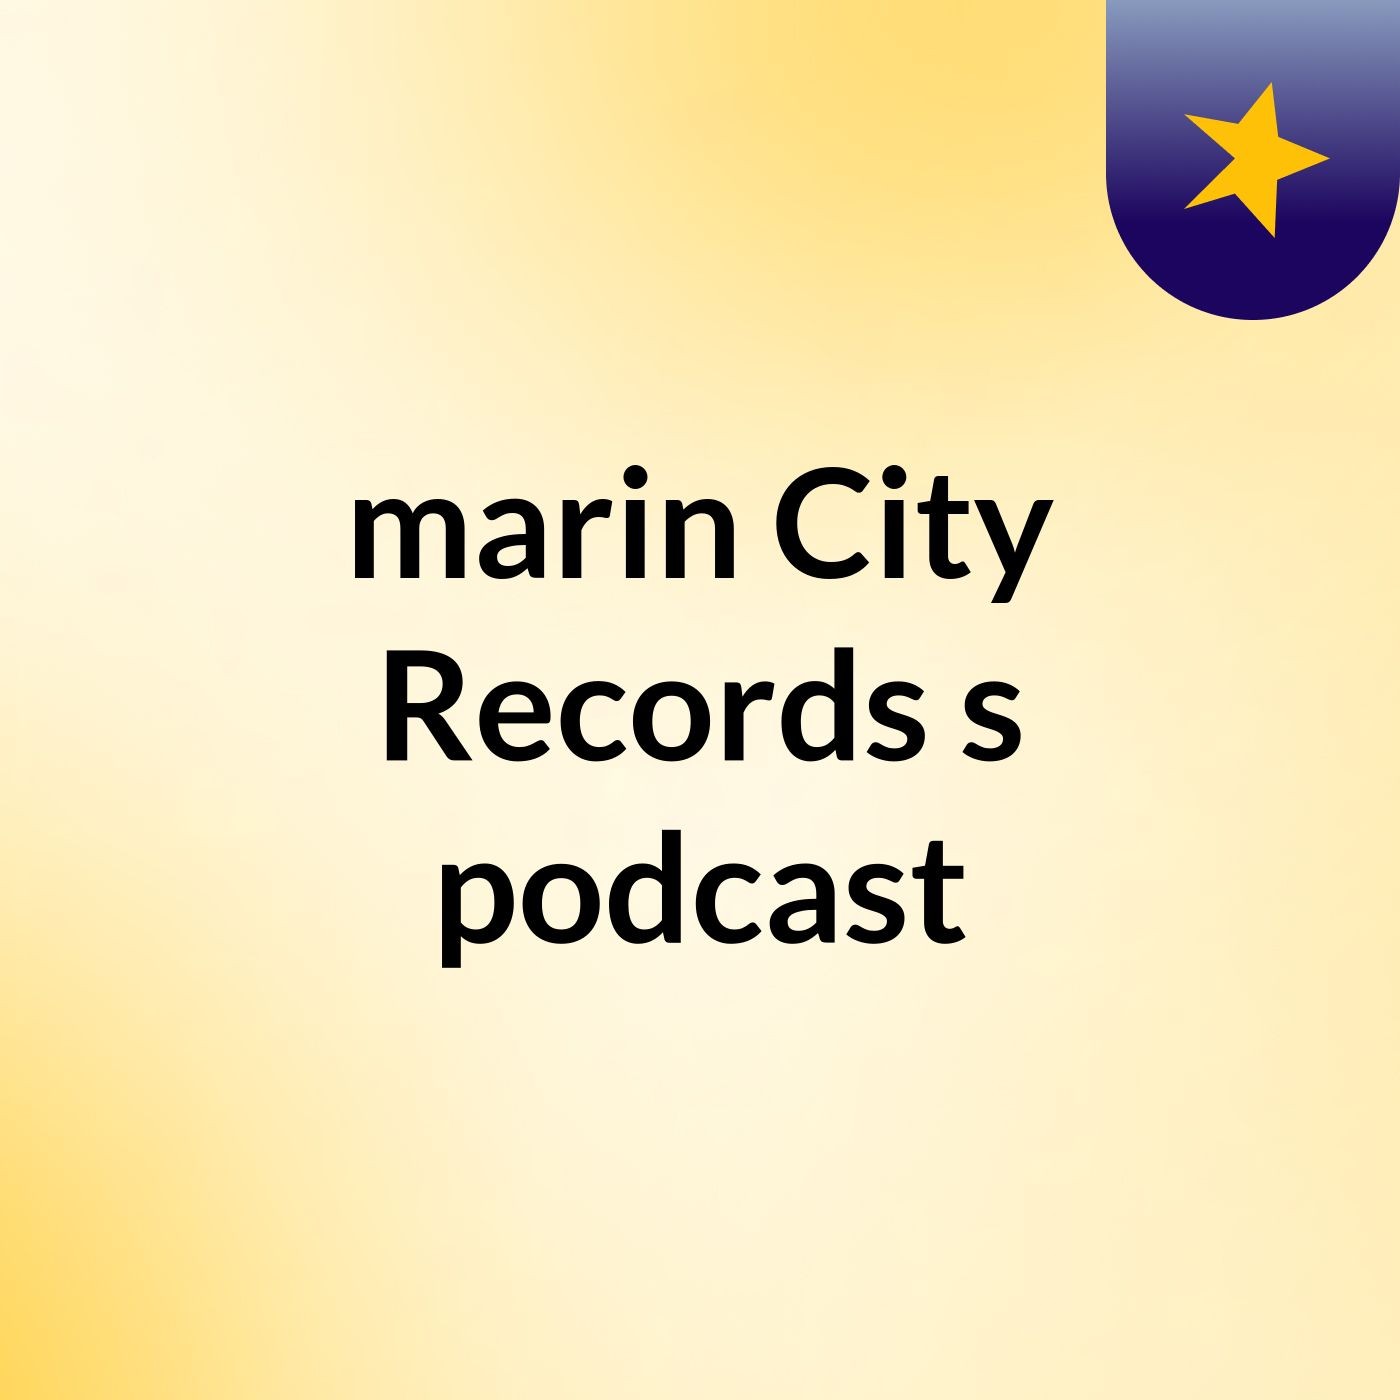 marin City Records's podcast